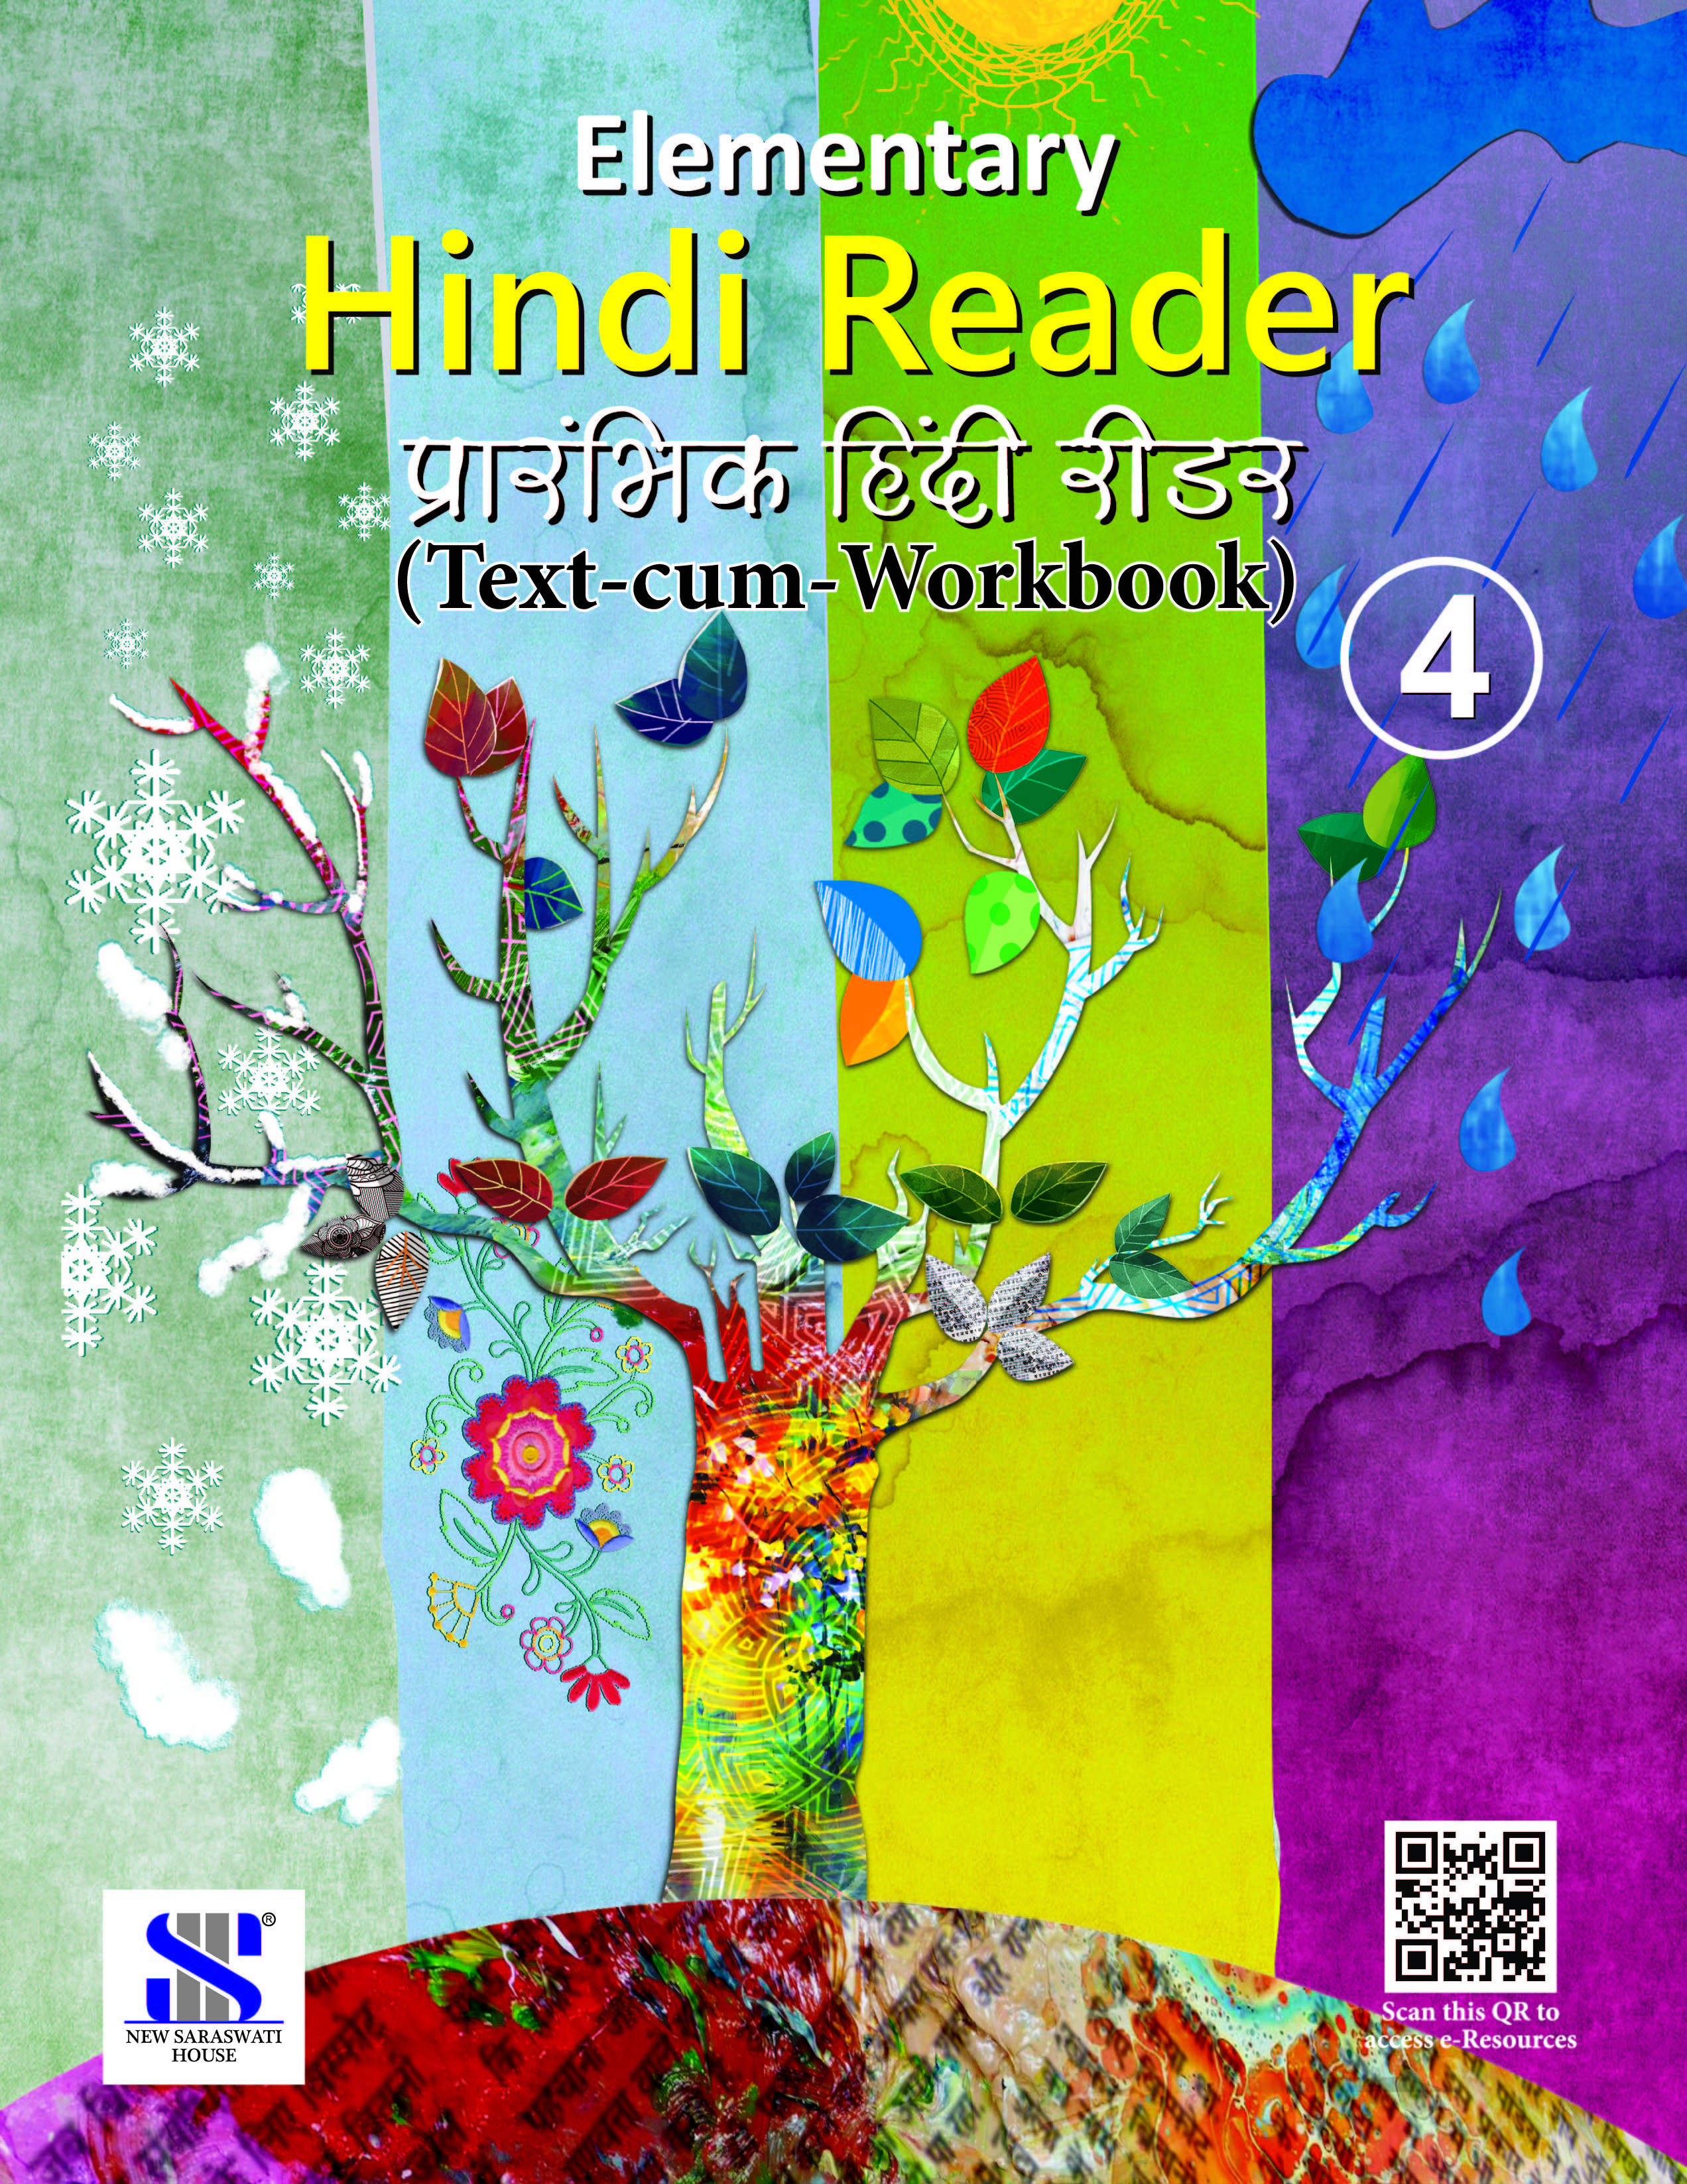 Elementry Hindi Reader (Text-cum-workbook)-4